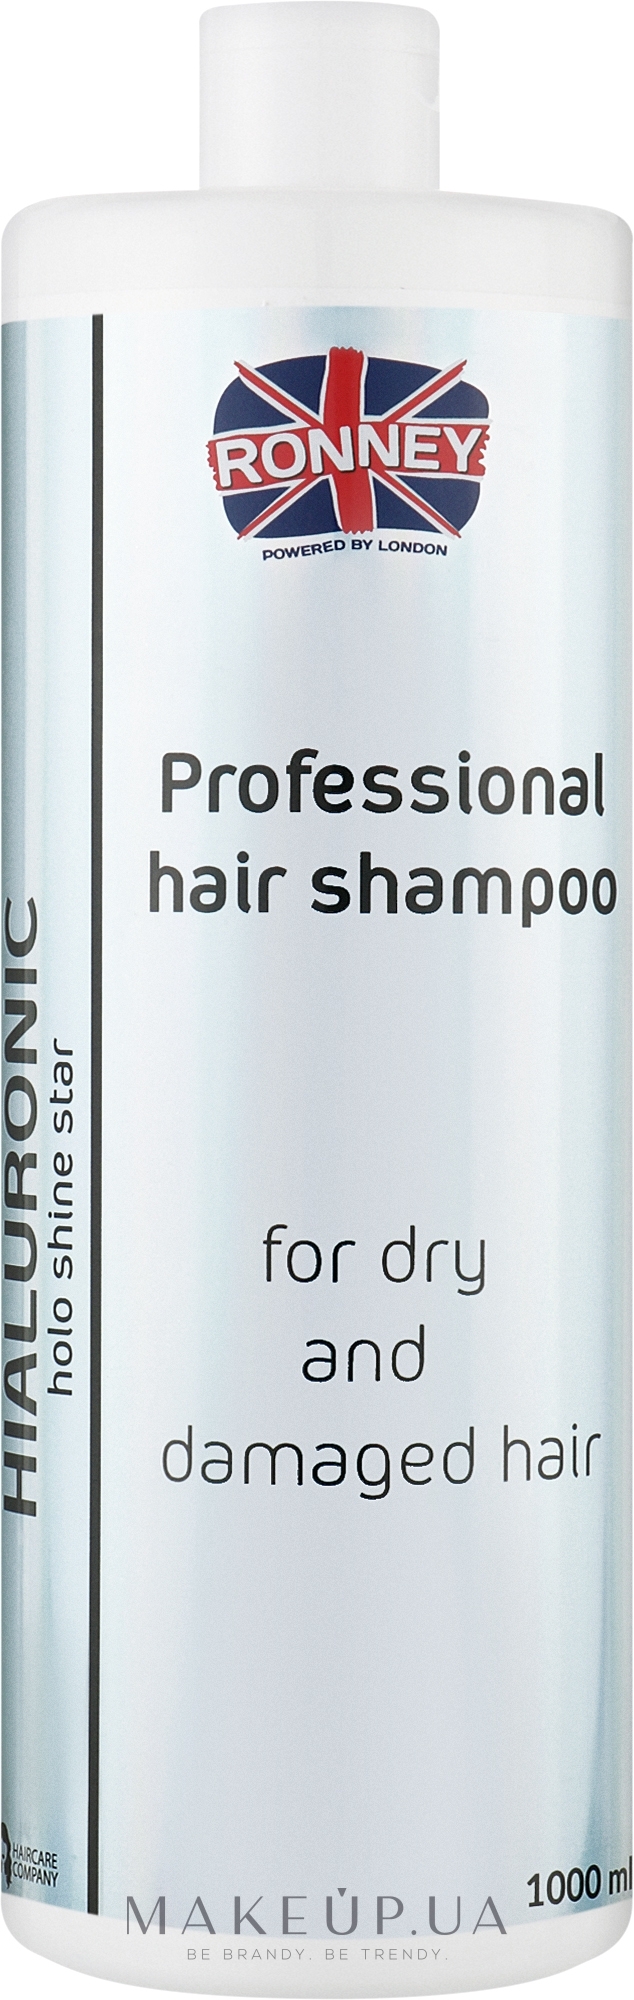 Увлажняющий шампунь с гиалуроновой кислотой для сухих и поврежденных волос - Ronney Professional Holo Shine Star Hialuronic Shampoo — фото 1000ml